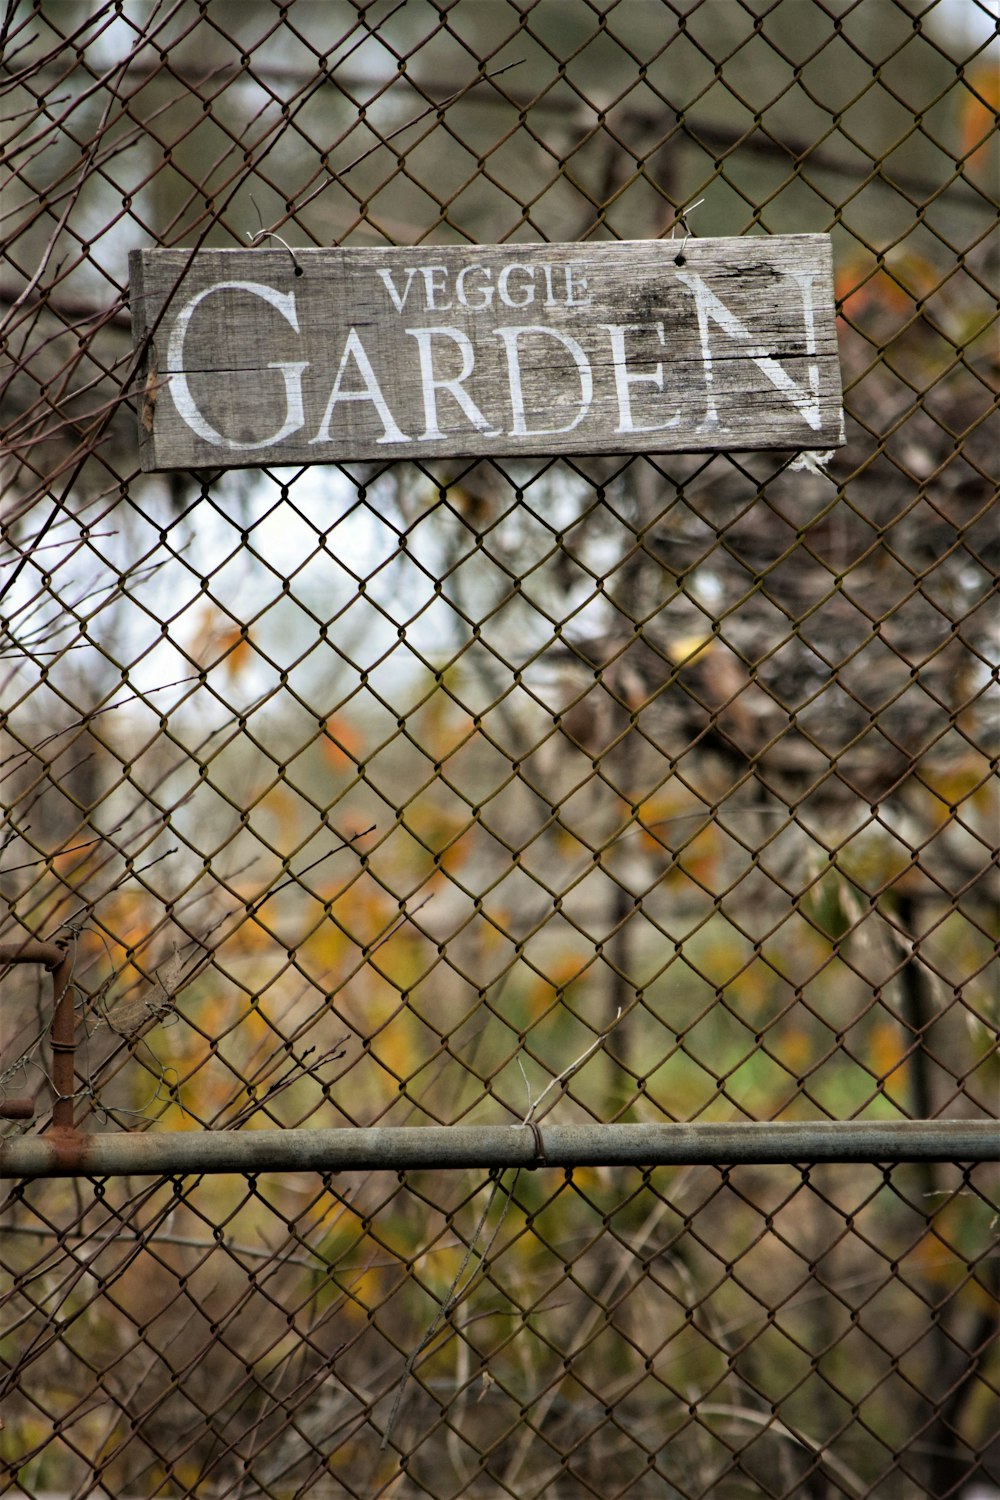 Un panneau sur une clôture qui dit jardin végétalien